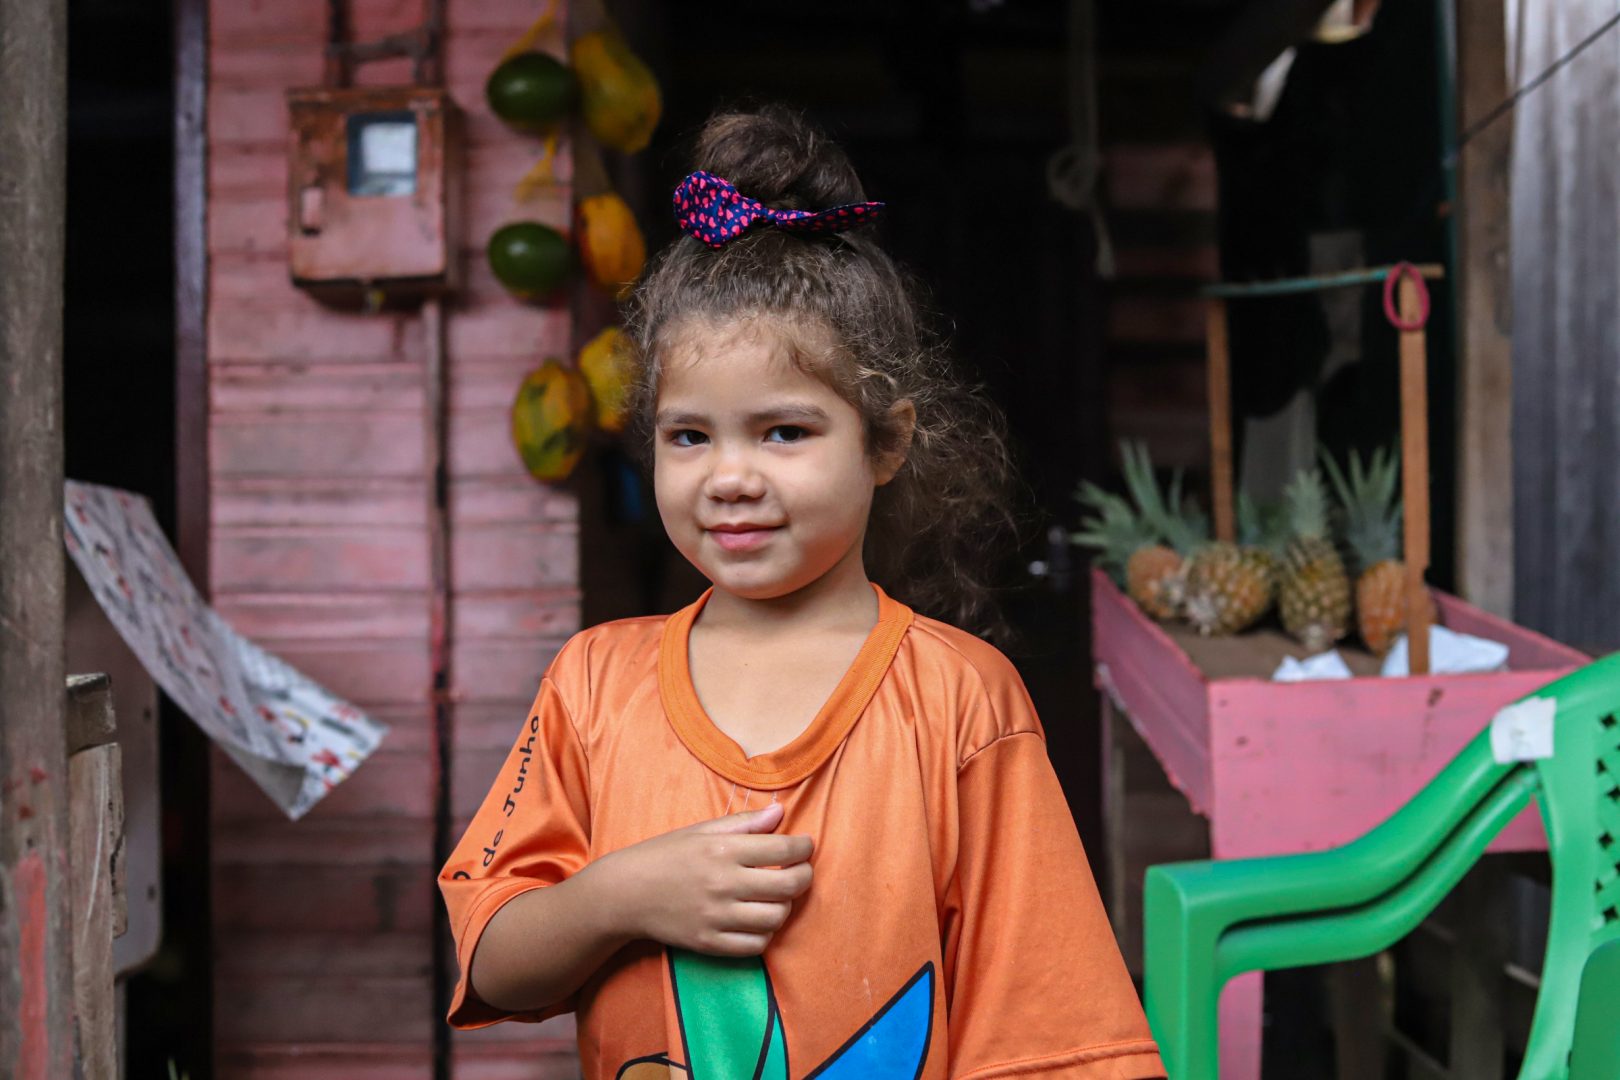 Uma menina de cabelos cacheados e castanho claro, vestindo uma camiseta laranja, posa para a foto, em frente a um mercadinho de madeira, onde estão expostas algumas frutas.